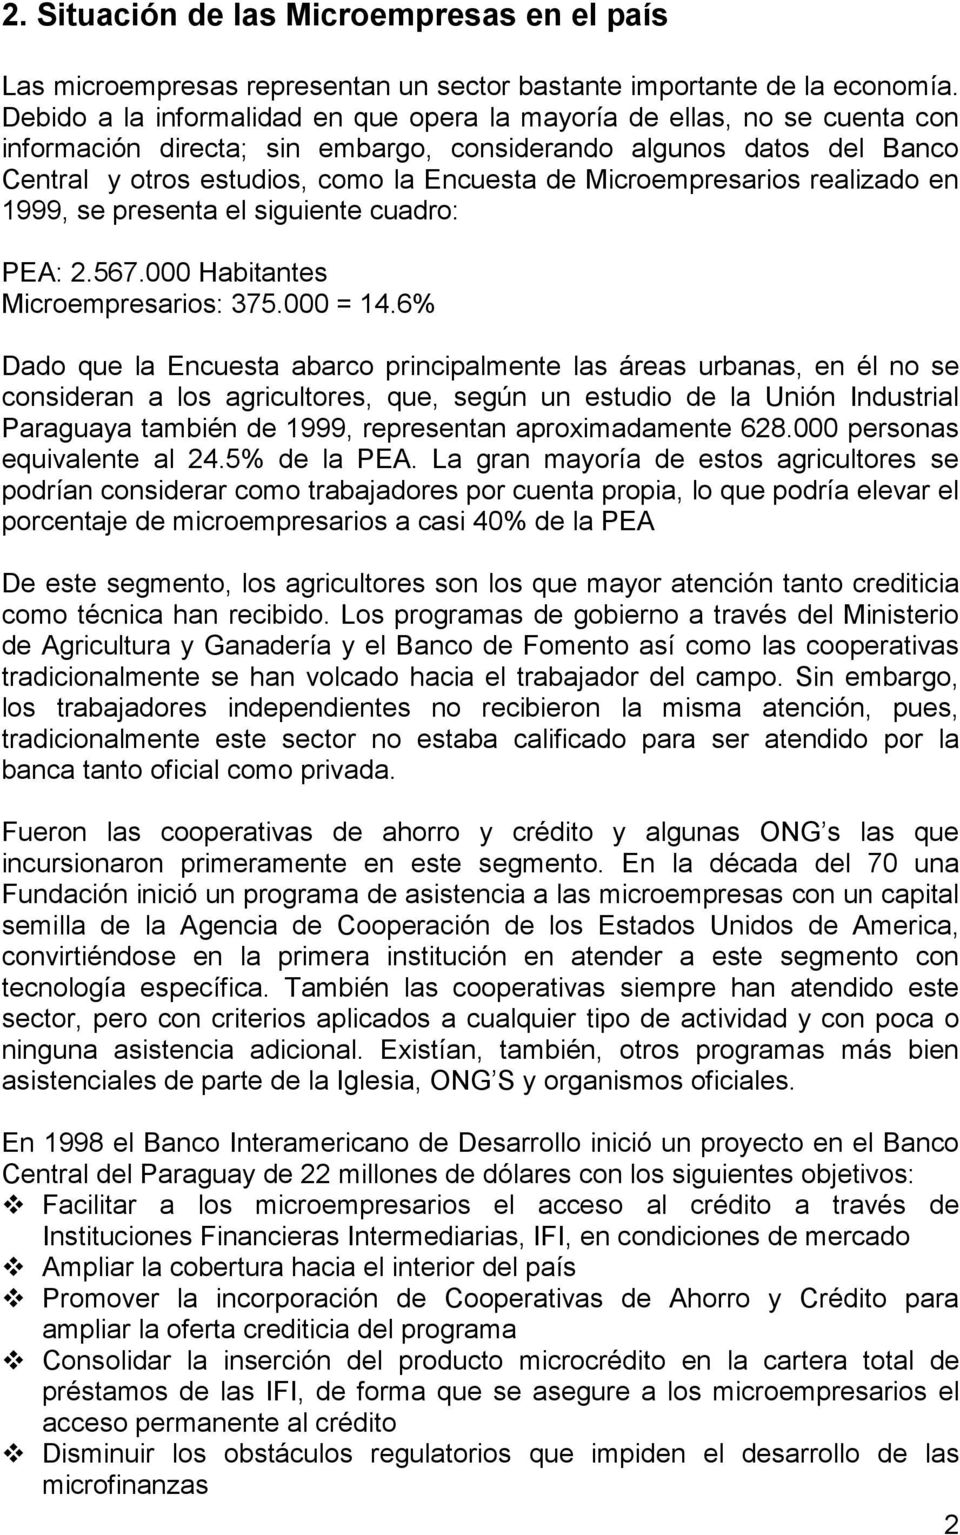 Microempresarios realizado en 1999, se presenta el siguiente cuadro: PEA: 2.567.000 Habitantes Microempresarios: 375.000 = 14.